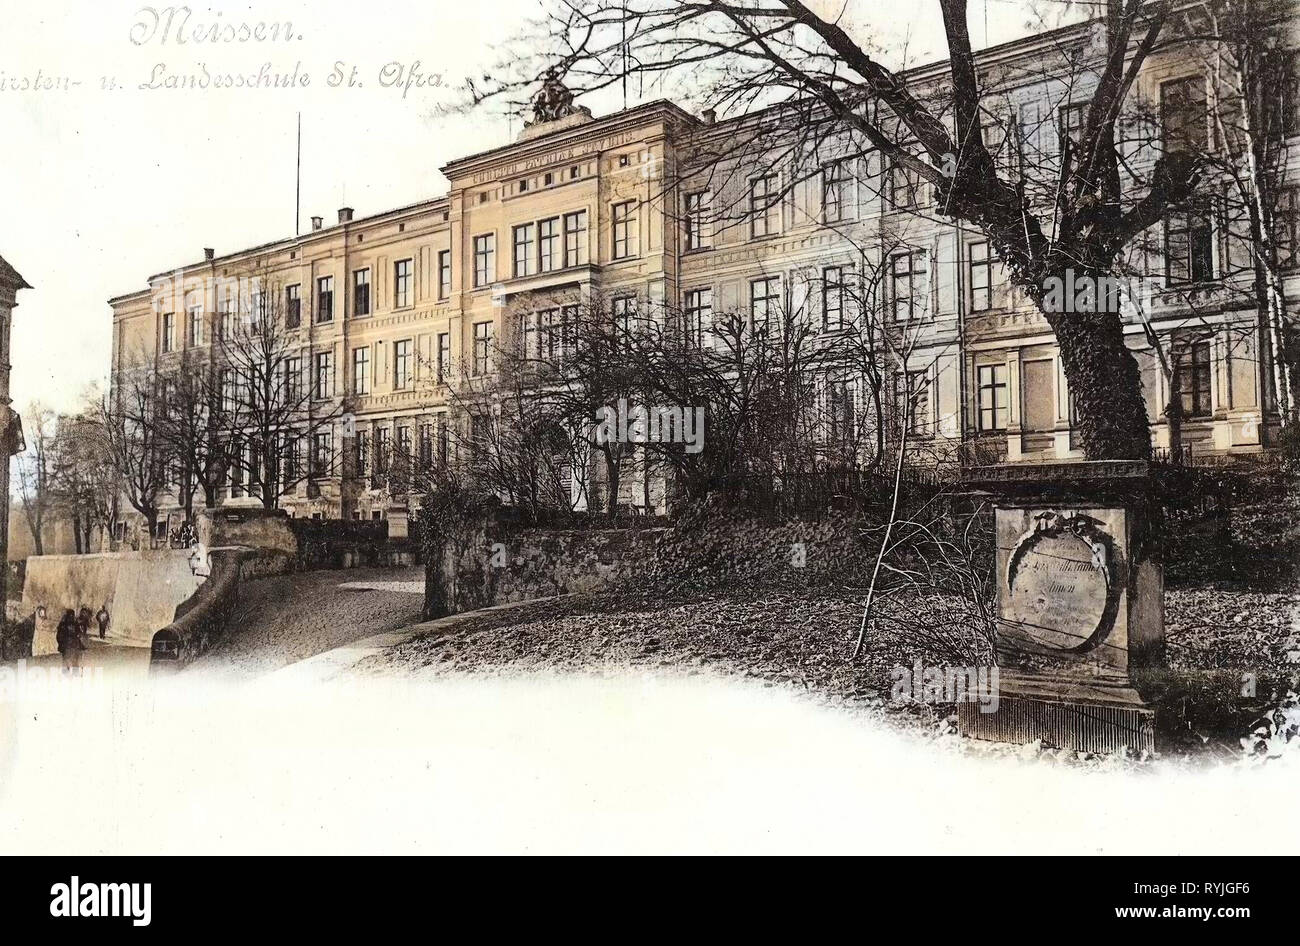 Monuments and memorials in Landkreis Meißen, Sächsisches Landesgymnasium Sankt Afra, 1898, Meißen, Fürsten, und Landesschule St. Afra, Germany Stock Photo